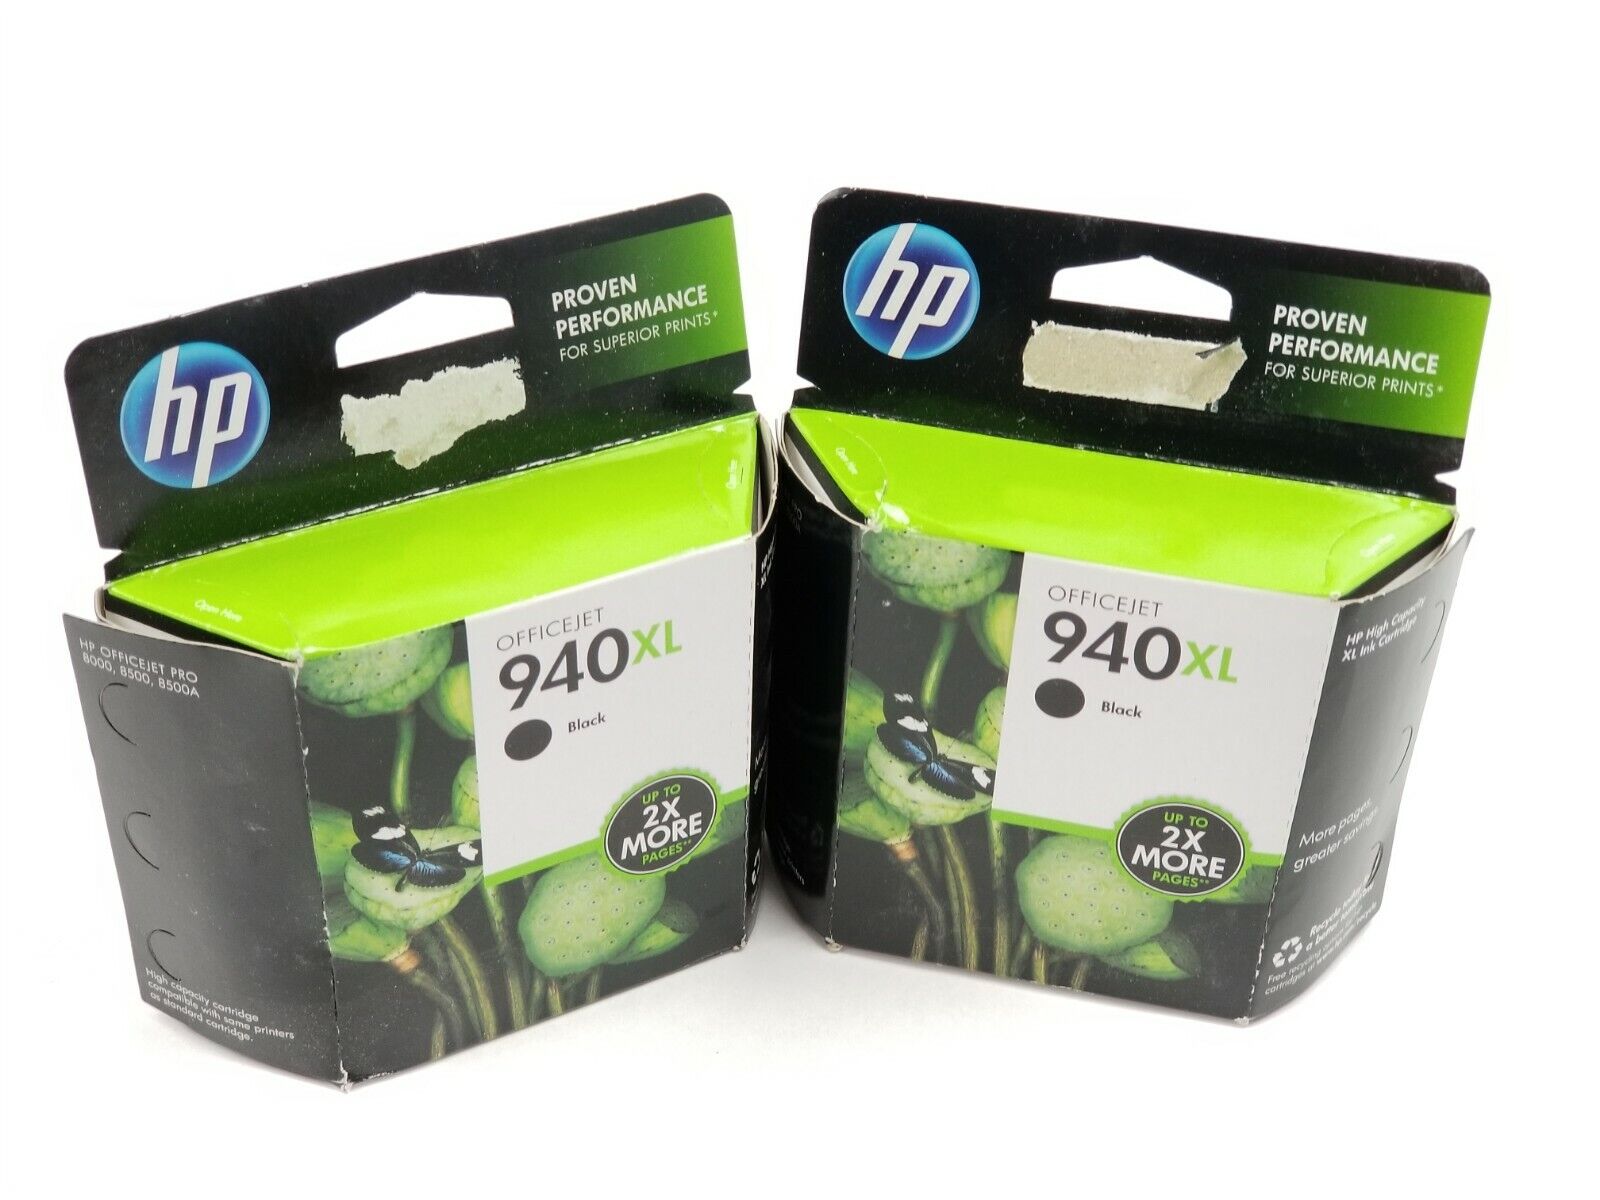 HP OfficeJet 940XL Black Ink Cartridge  Feb 2016 Lot of (2)